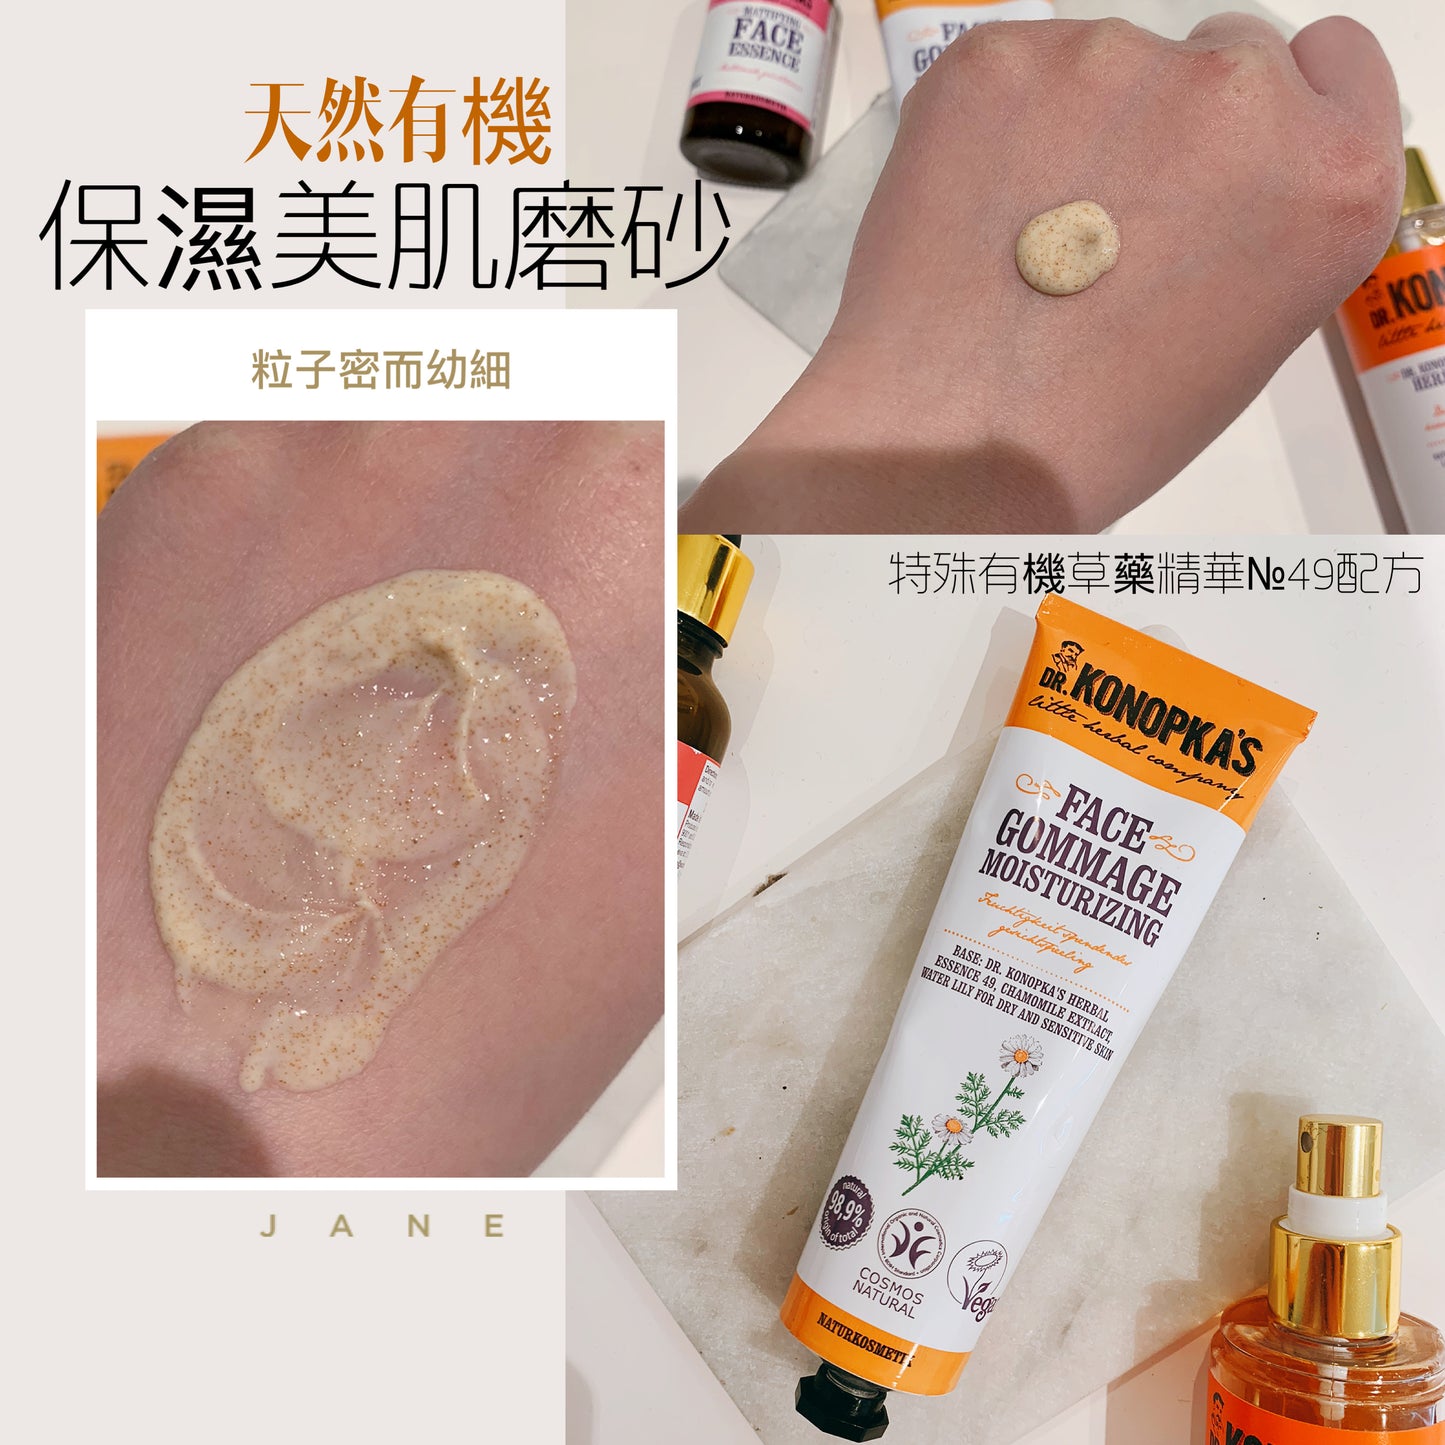 [有機保濕美肌磨砂乳🔥]Dr. konopka's face gommage moisturizing 75ML - buy European skincare in Hong Kong - 1click2beauty